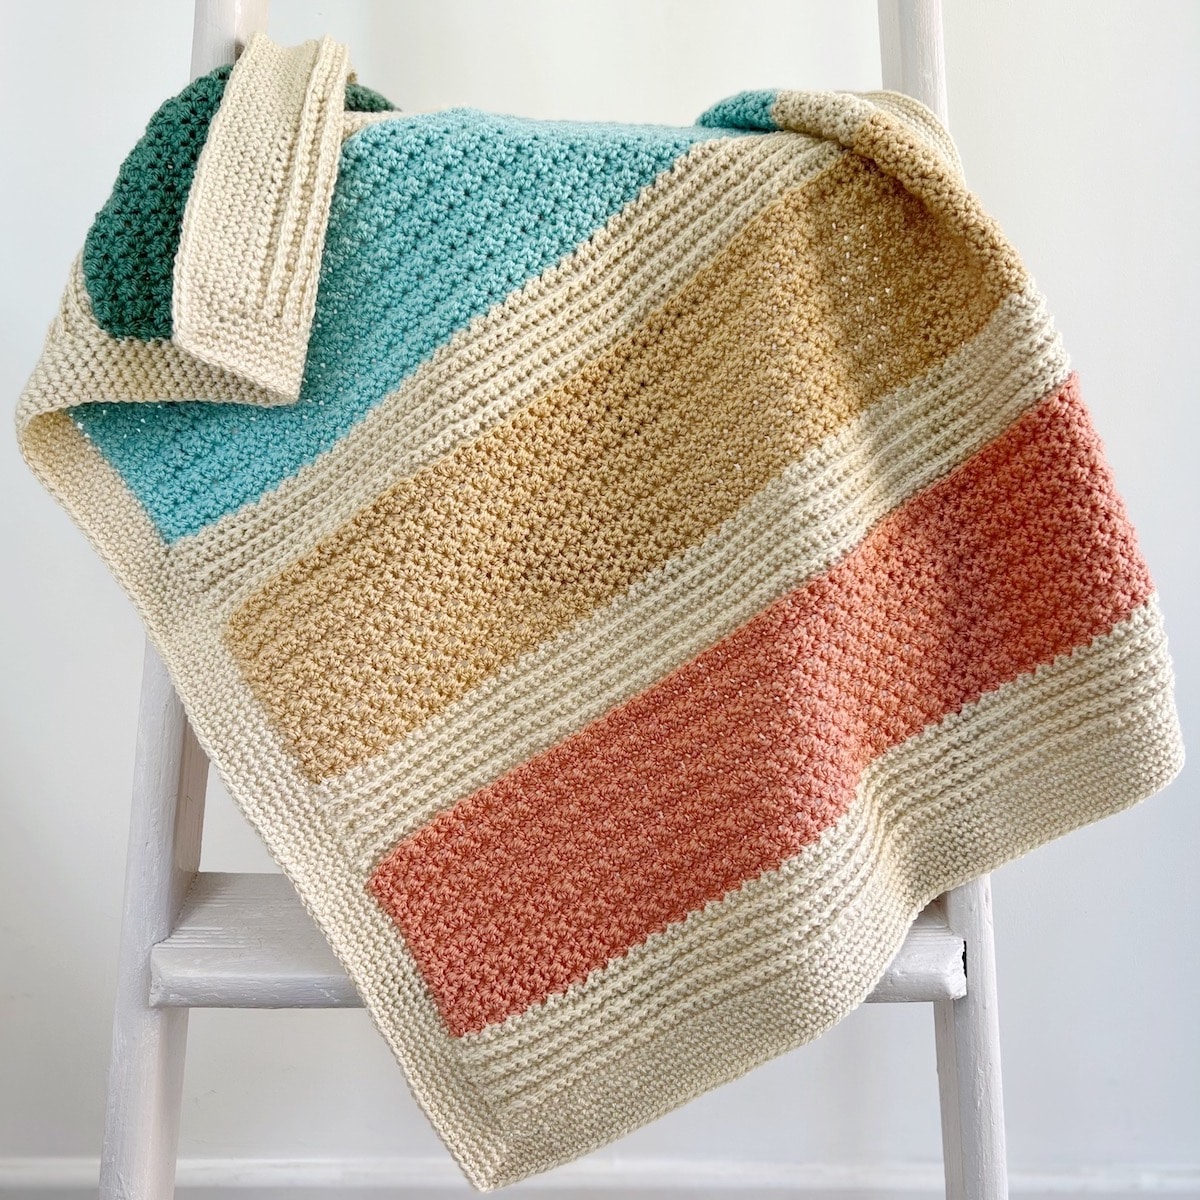 https://easycrochet.com/wp-content/uploads/2022/09/Modern-striped-crochet-blanket-set.jpg